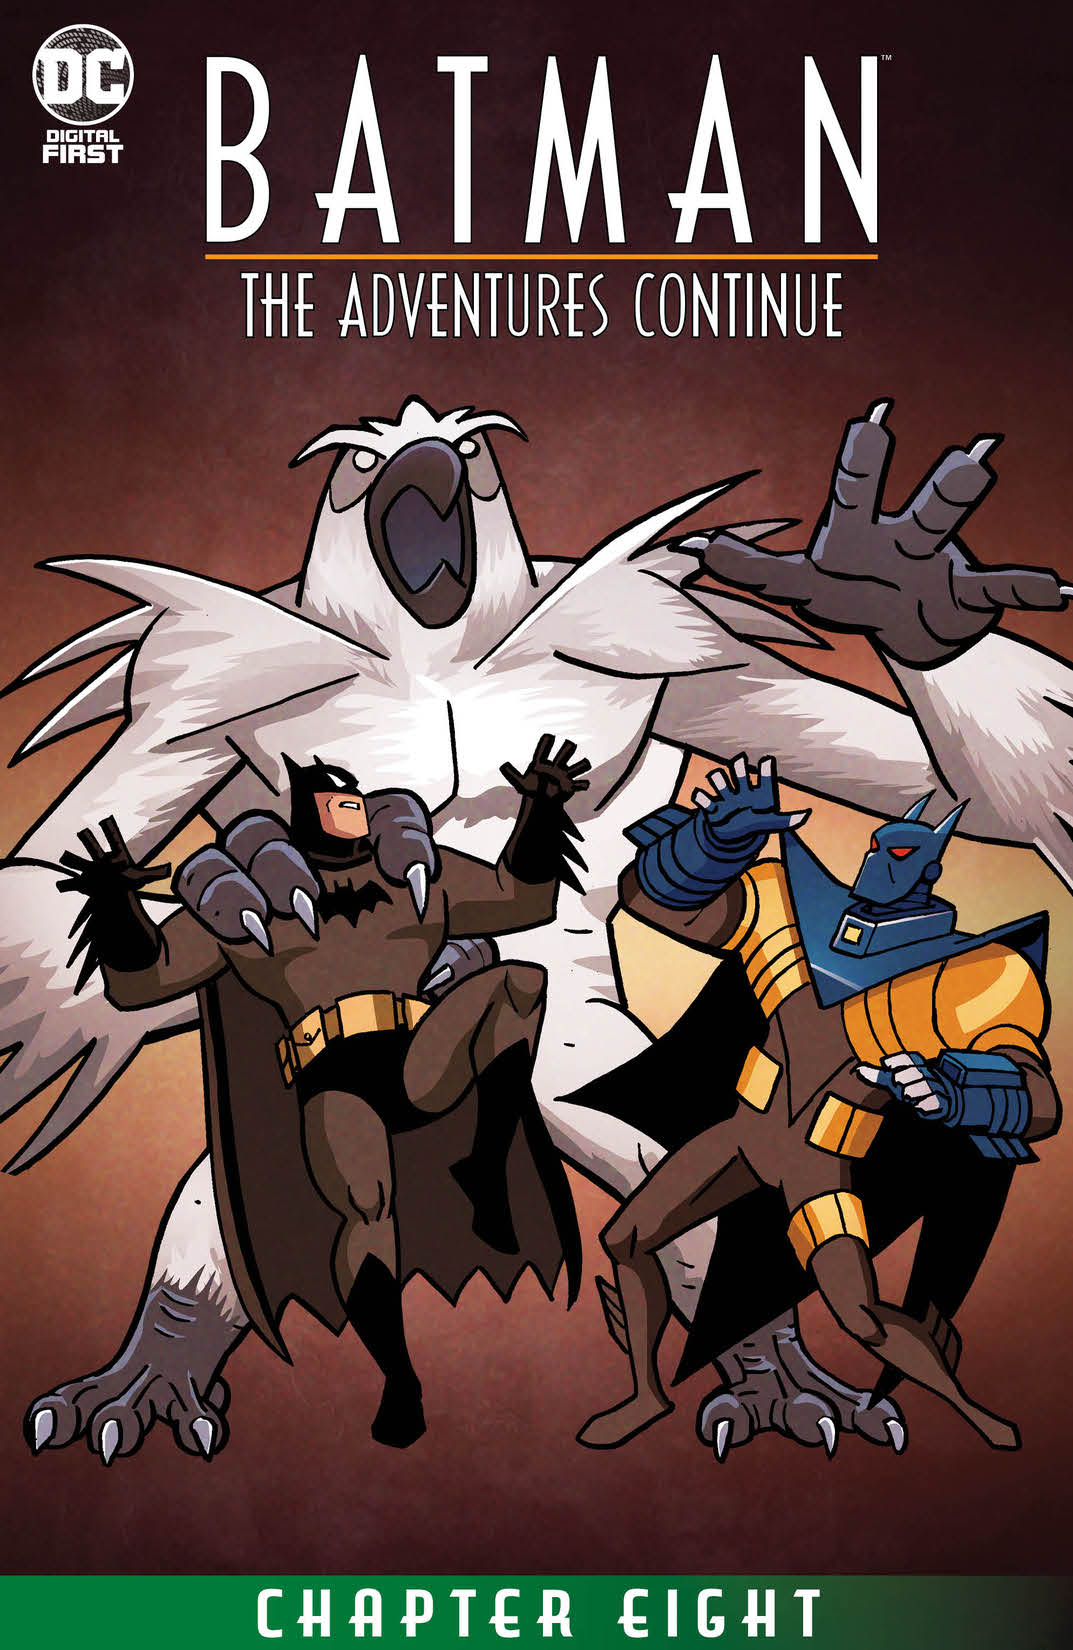 Batman: The Adventures Continue #8 preview images